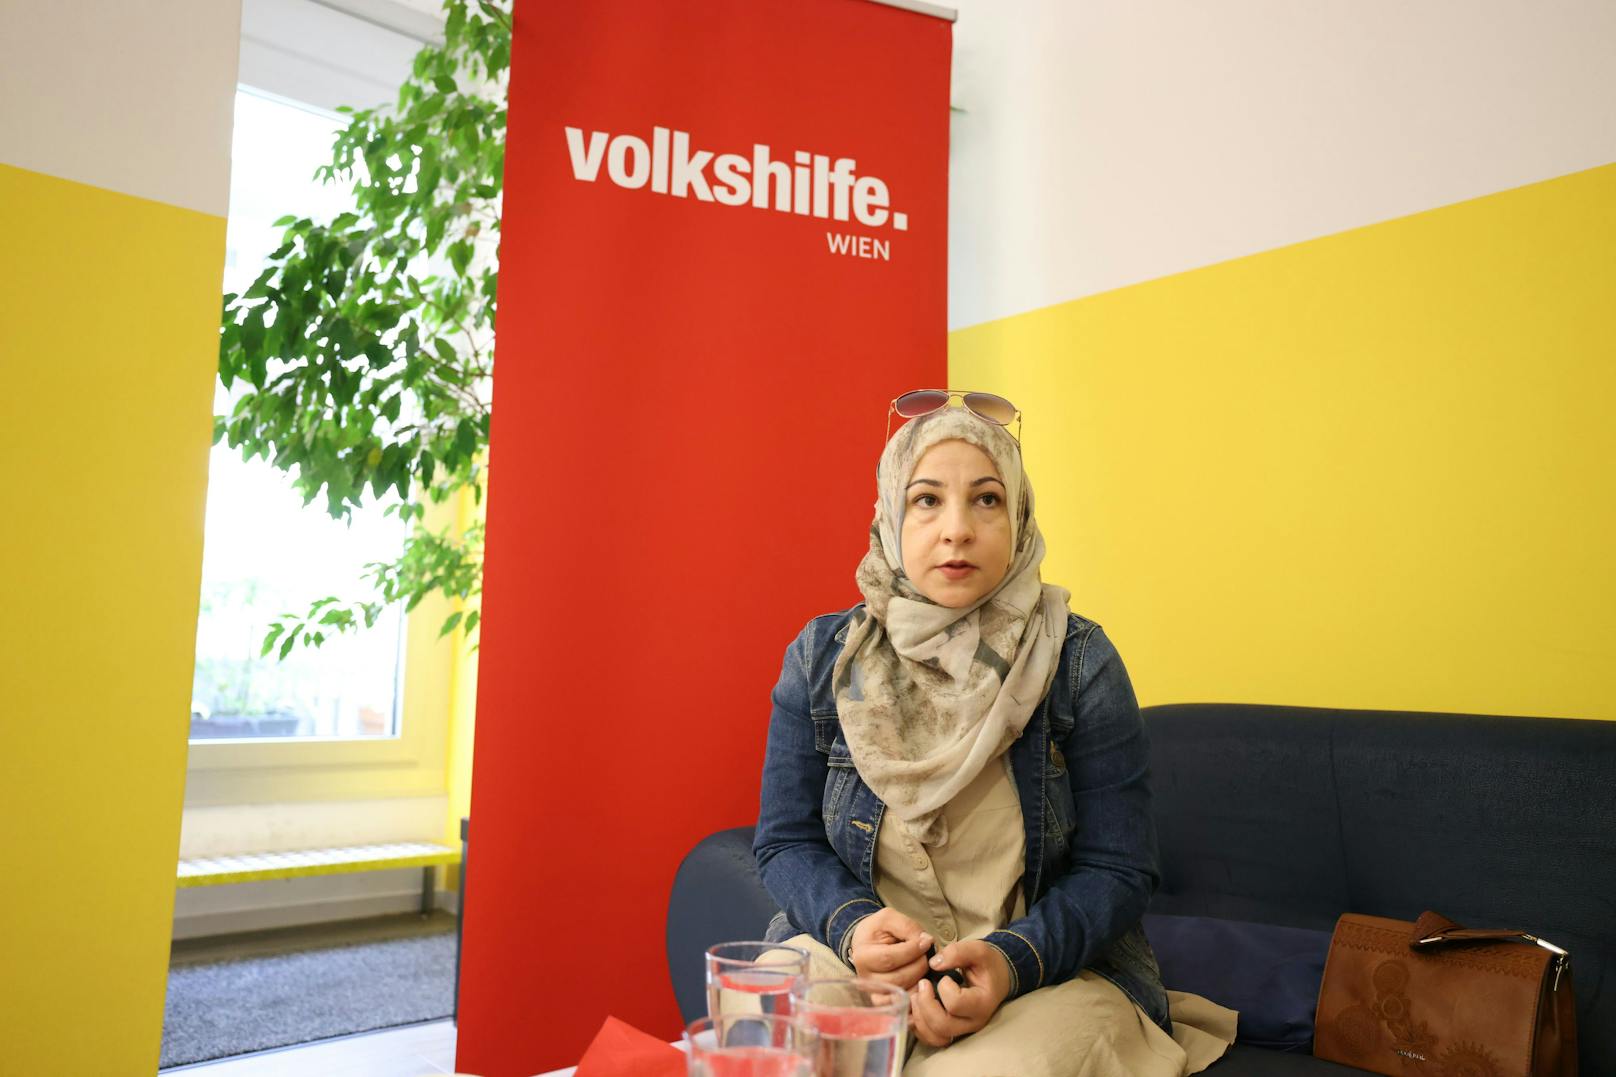 Sie macht seit 2015 beim Projekt "Migrant*innen für Gesundheit" der Volkshilfe Wien mit. Neben Fragen zu Versicherung und e-Card ist Fatima vor allem auch mit dem Thema Corona konfrontiert.